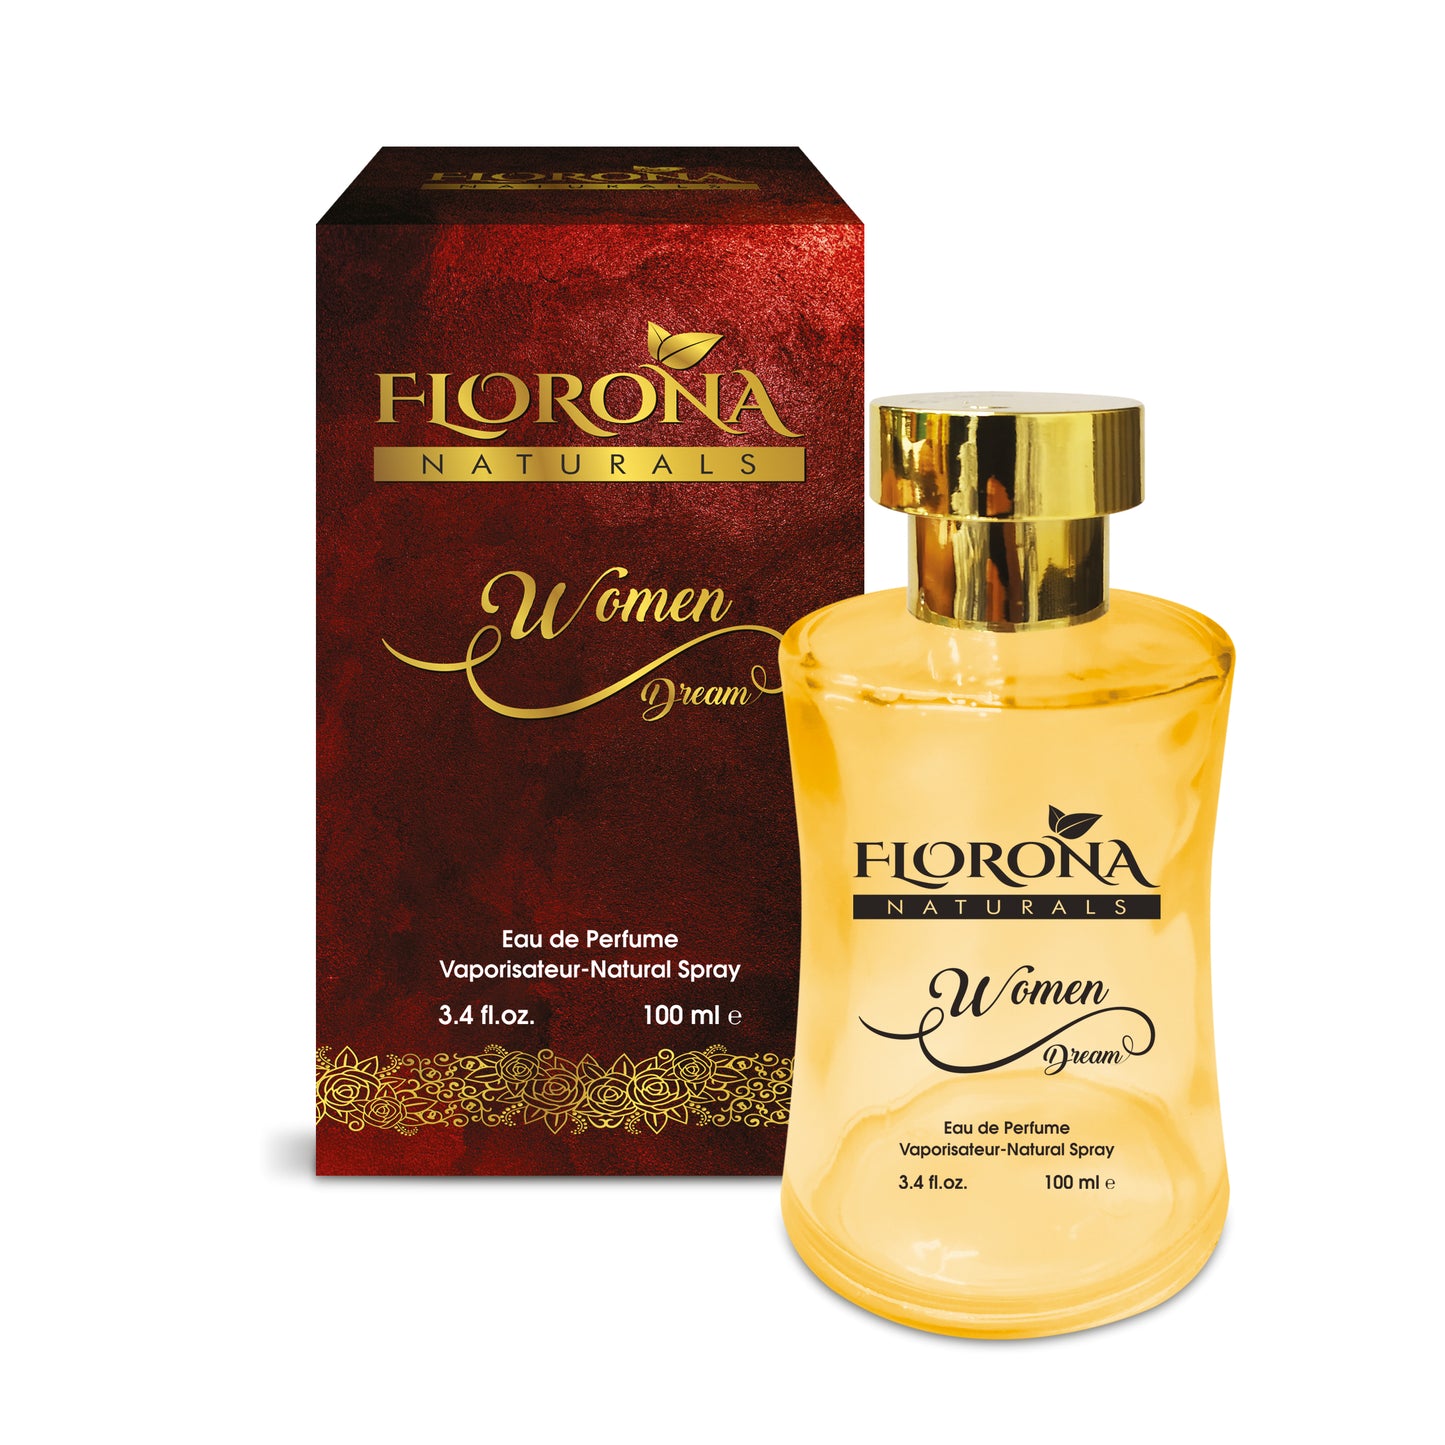 Florona Naturals Women Dream Eau De Perfume 100ml